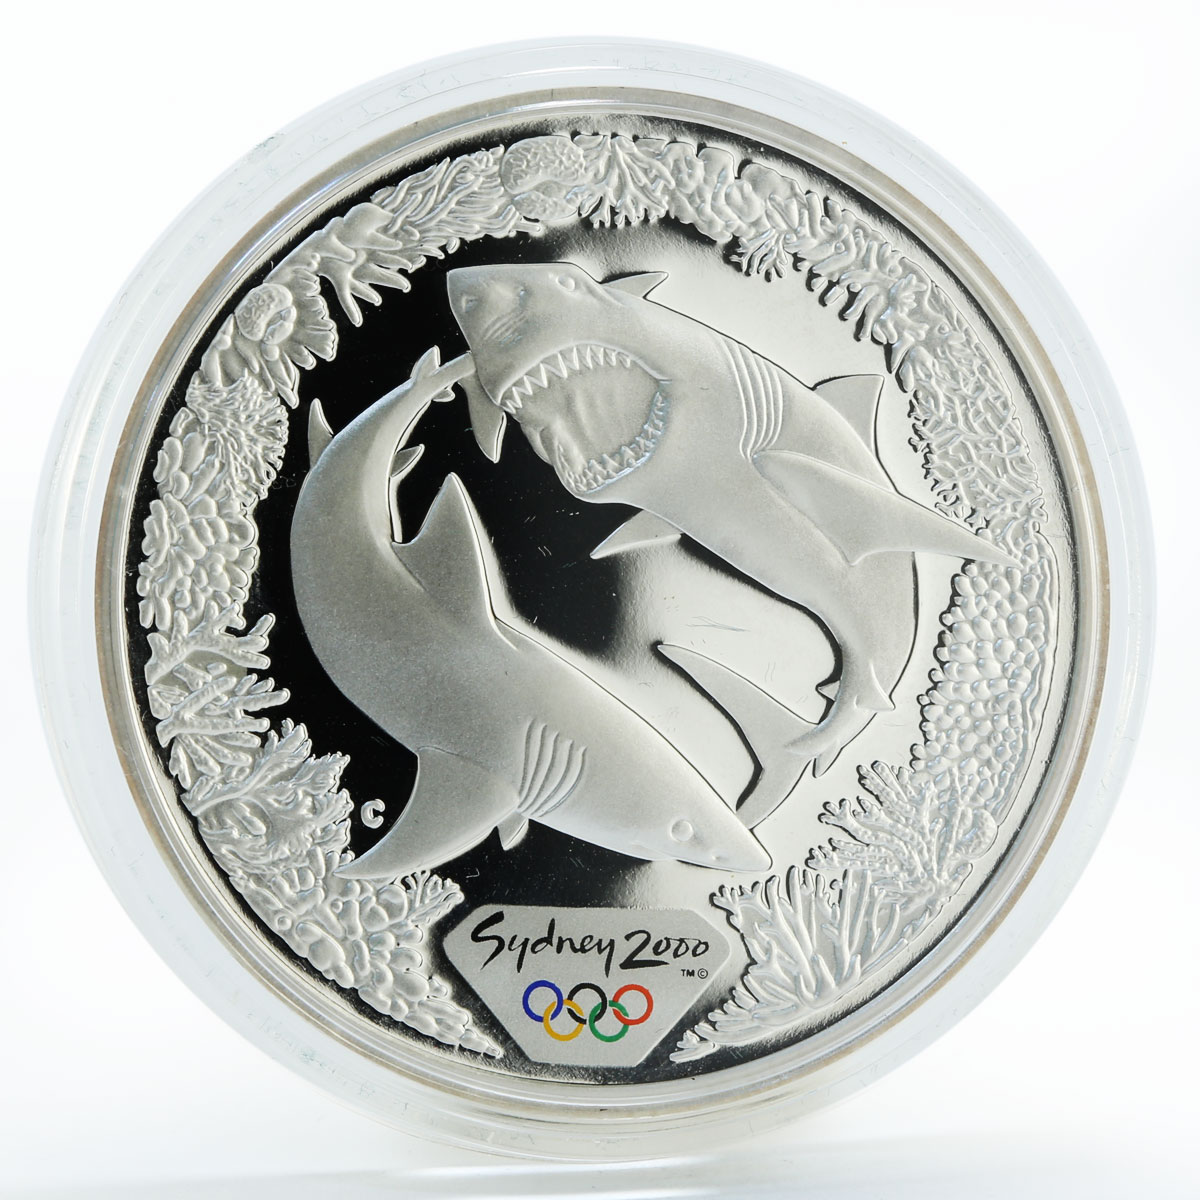 Australia 5 dollars Sydney Olympic Sharks silver coin 2000